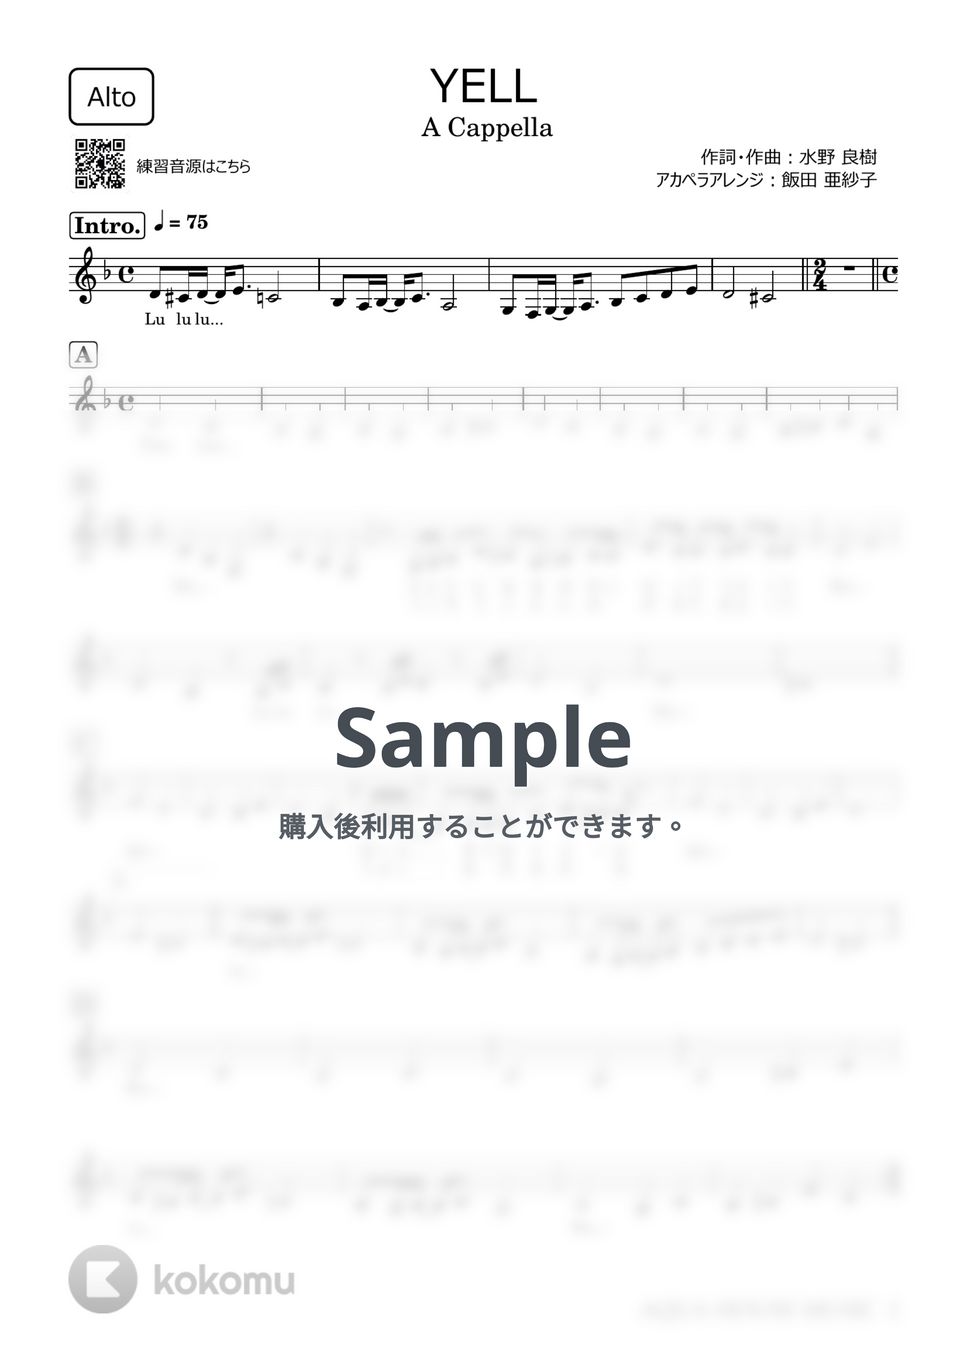 いきものがかり - YELL (アカペラ楽譜♪Altoパート譜) by 飯田 亜紗子